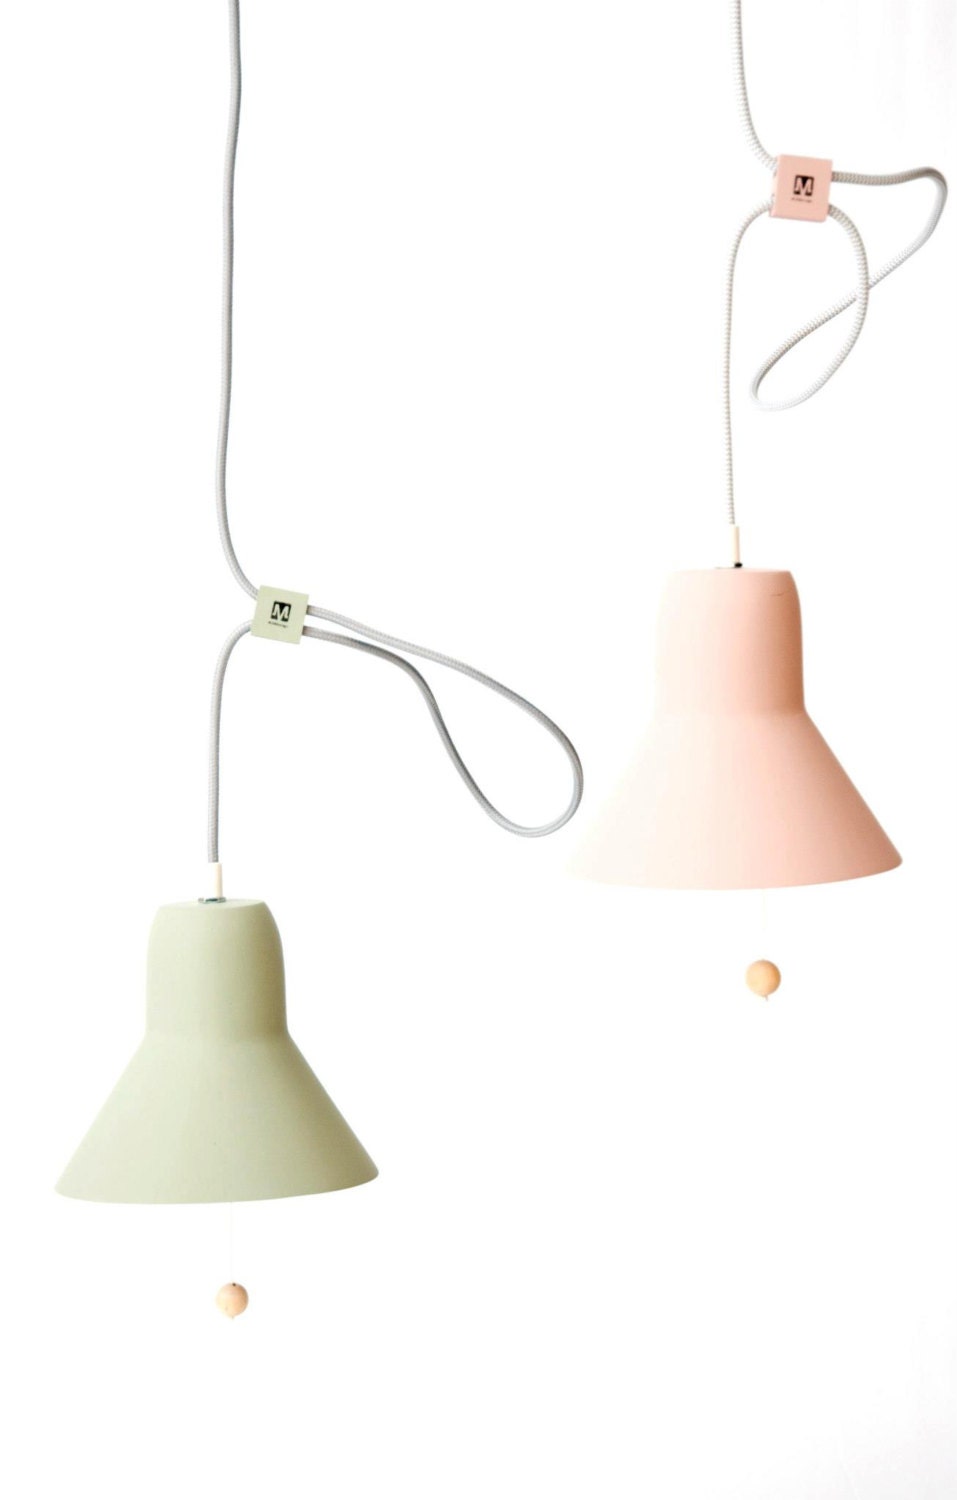 Pixoss hanging lamps - StudioMOSSdesign